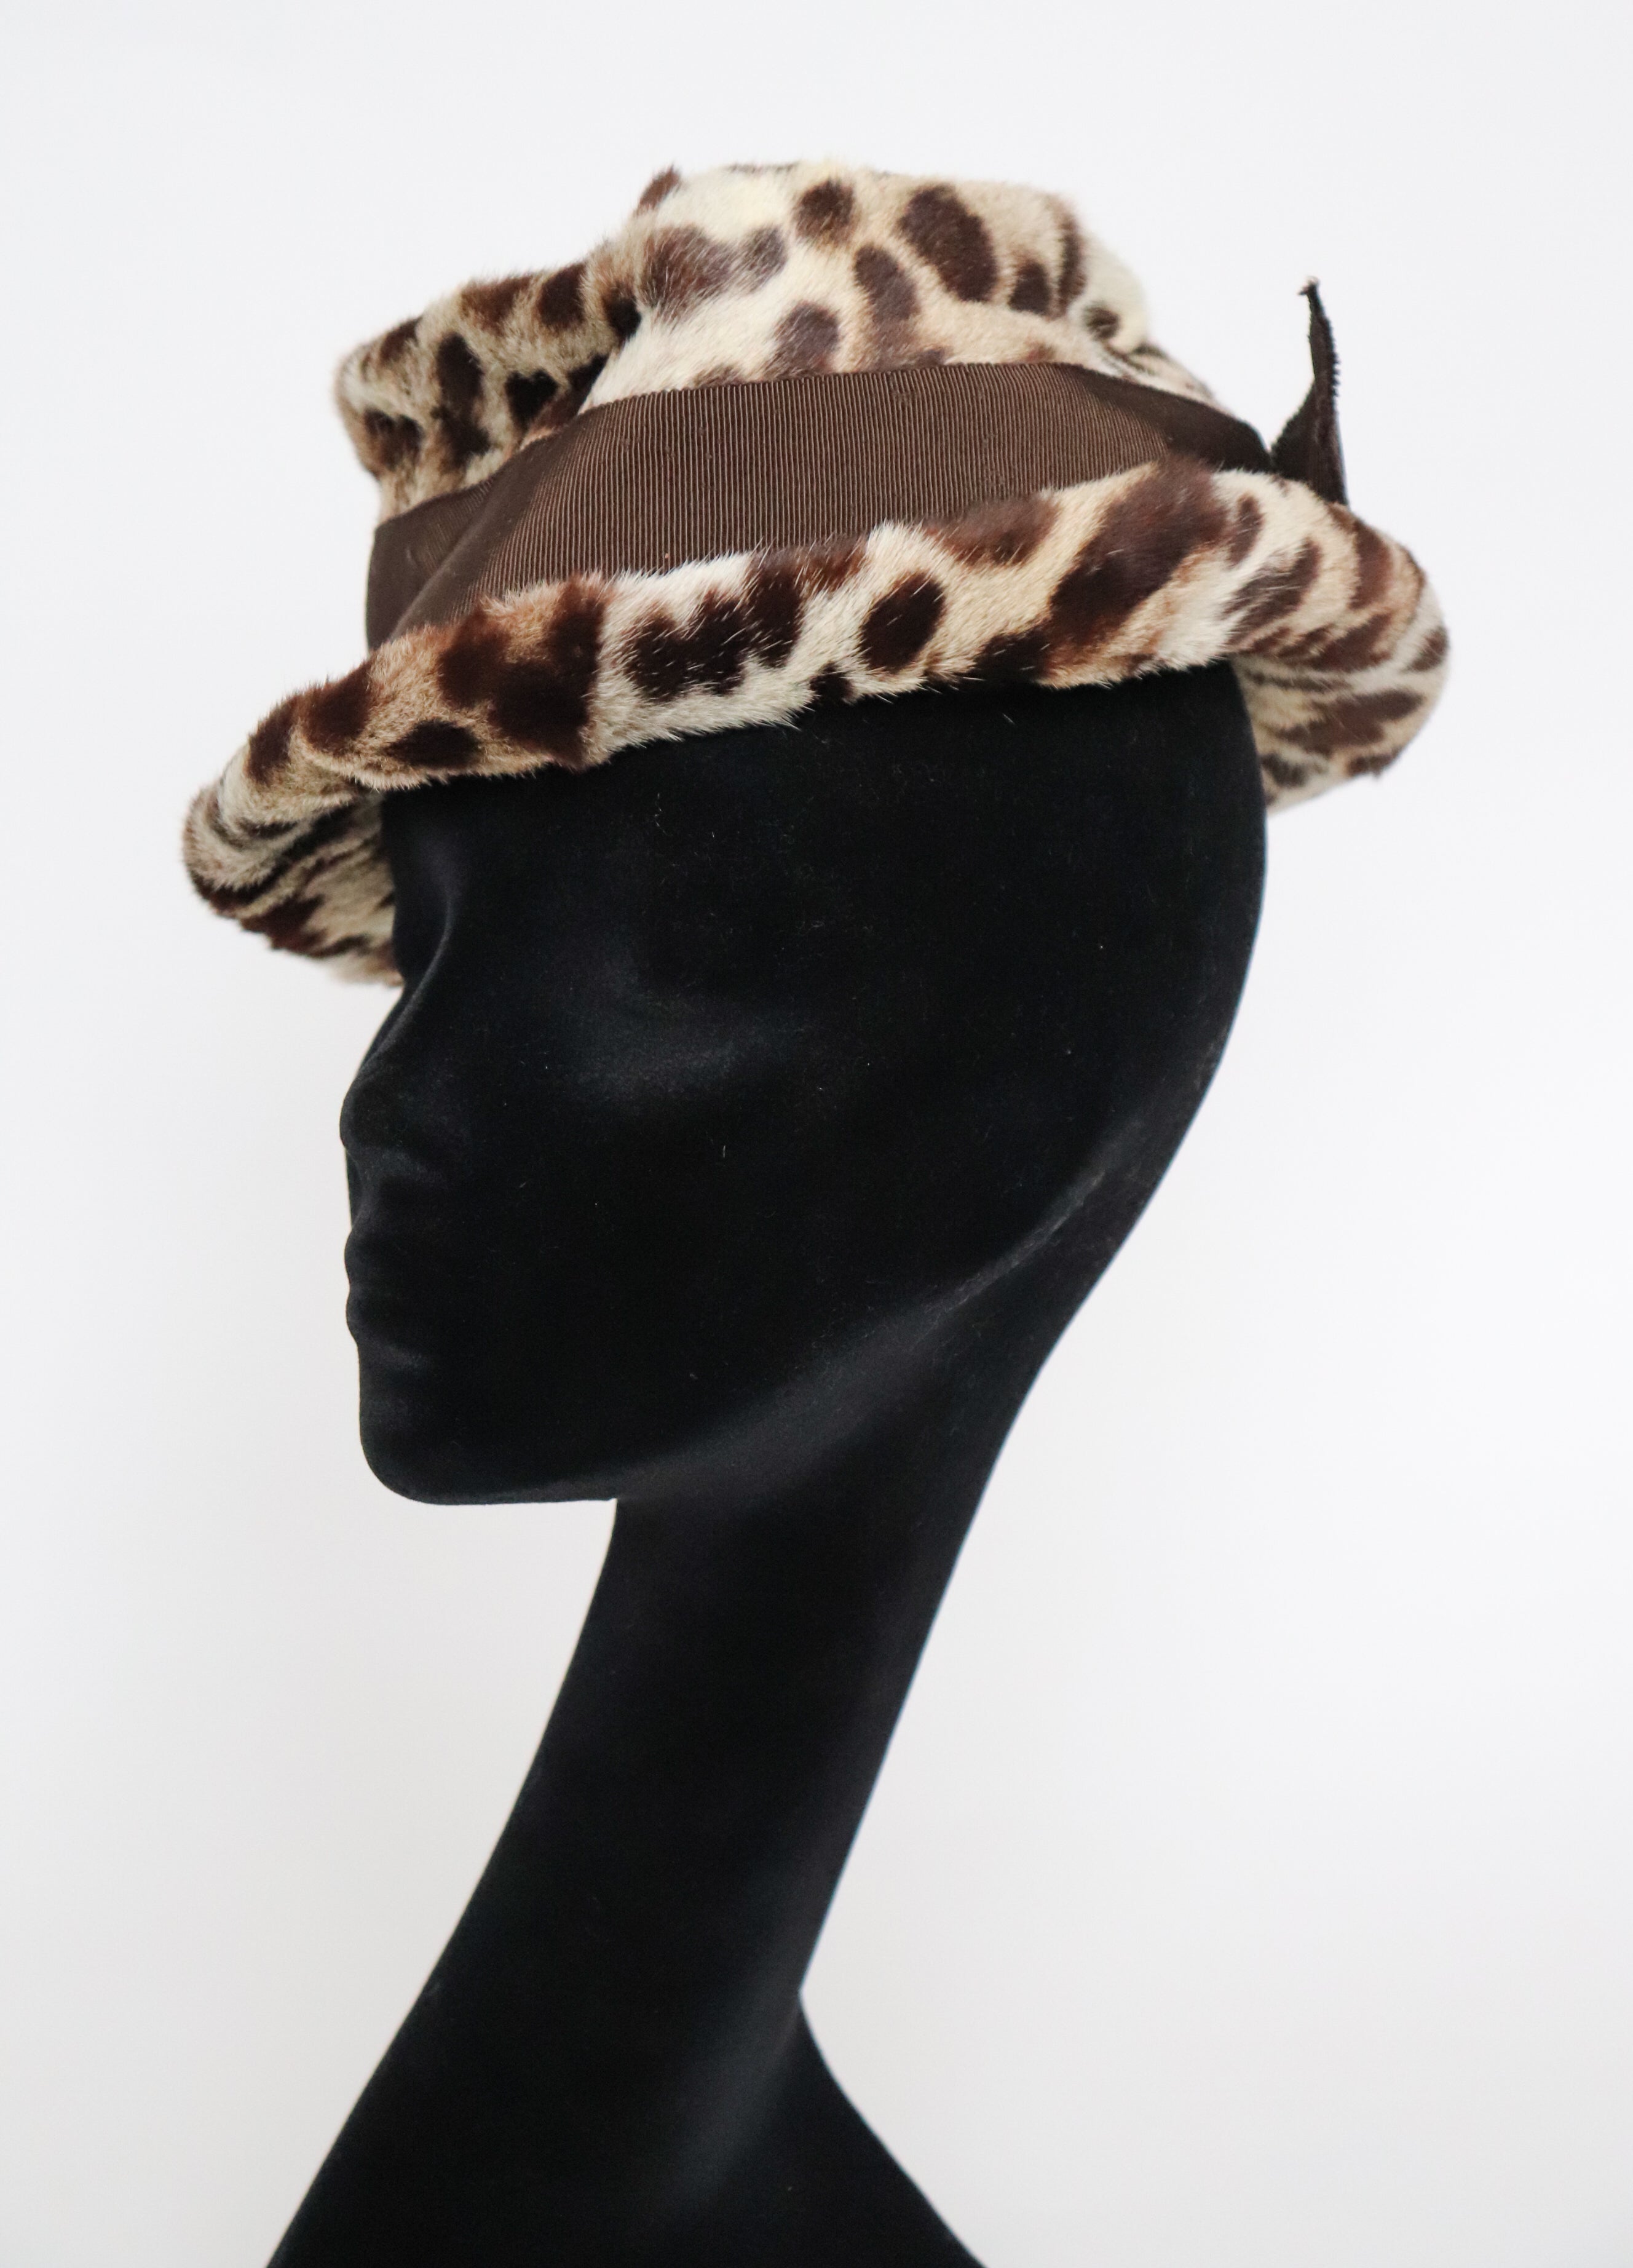 Leopard Print Fur Hat - Small Brim Hat - 1960s Brown - XS / Small